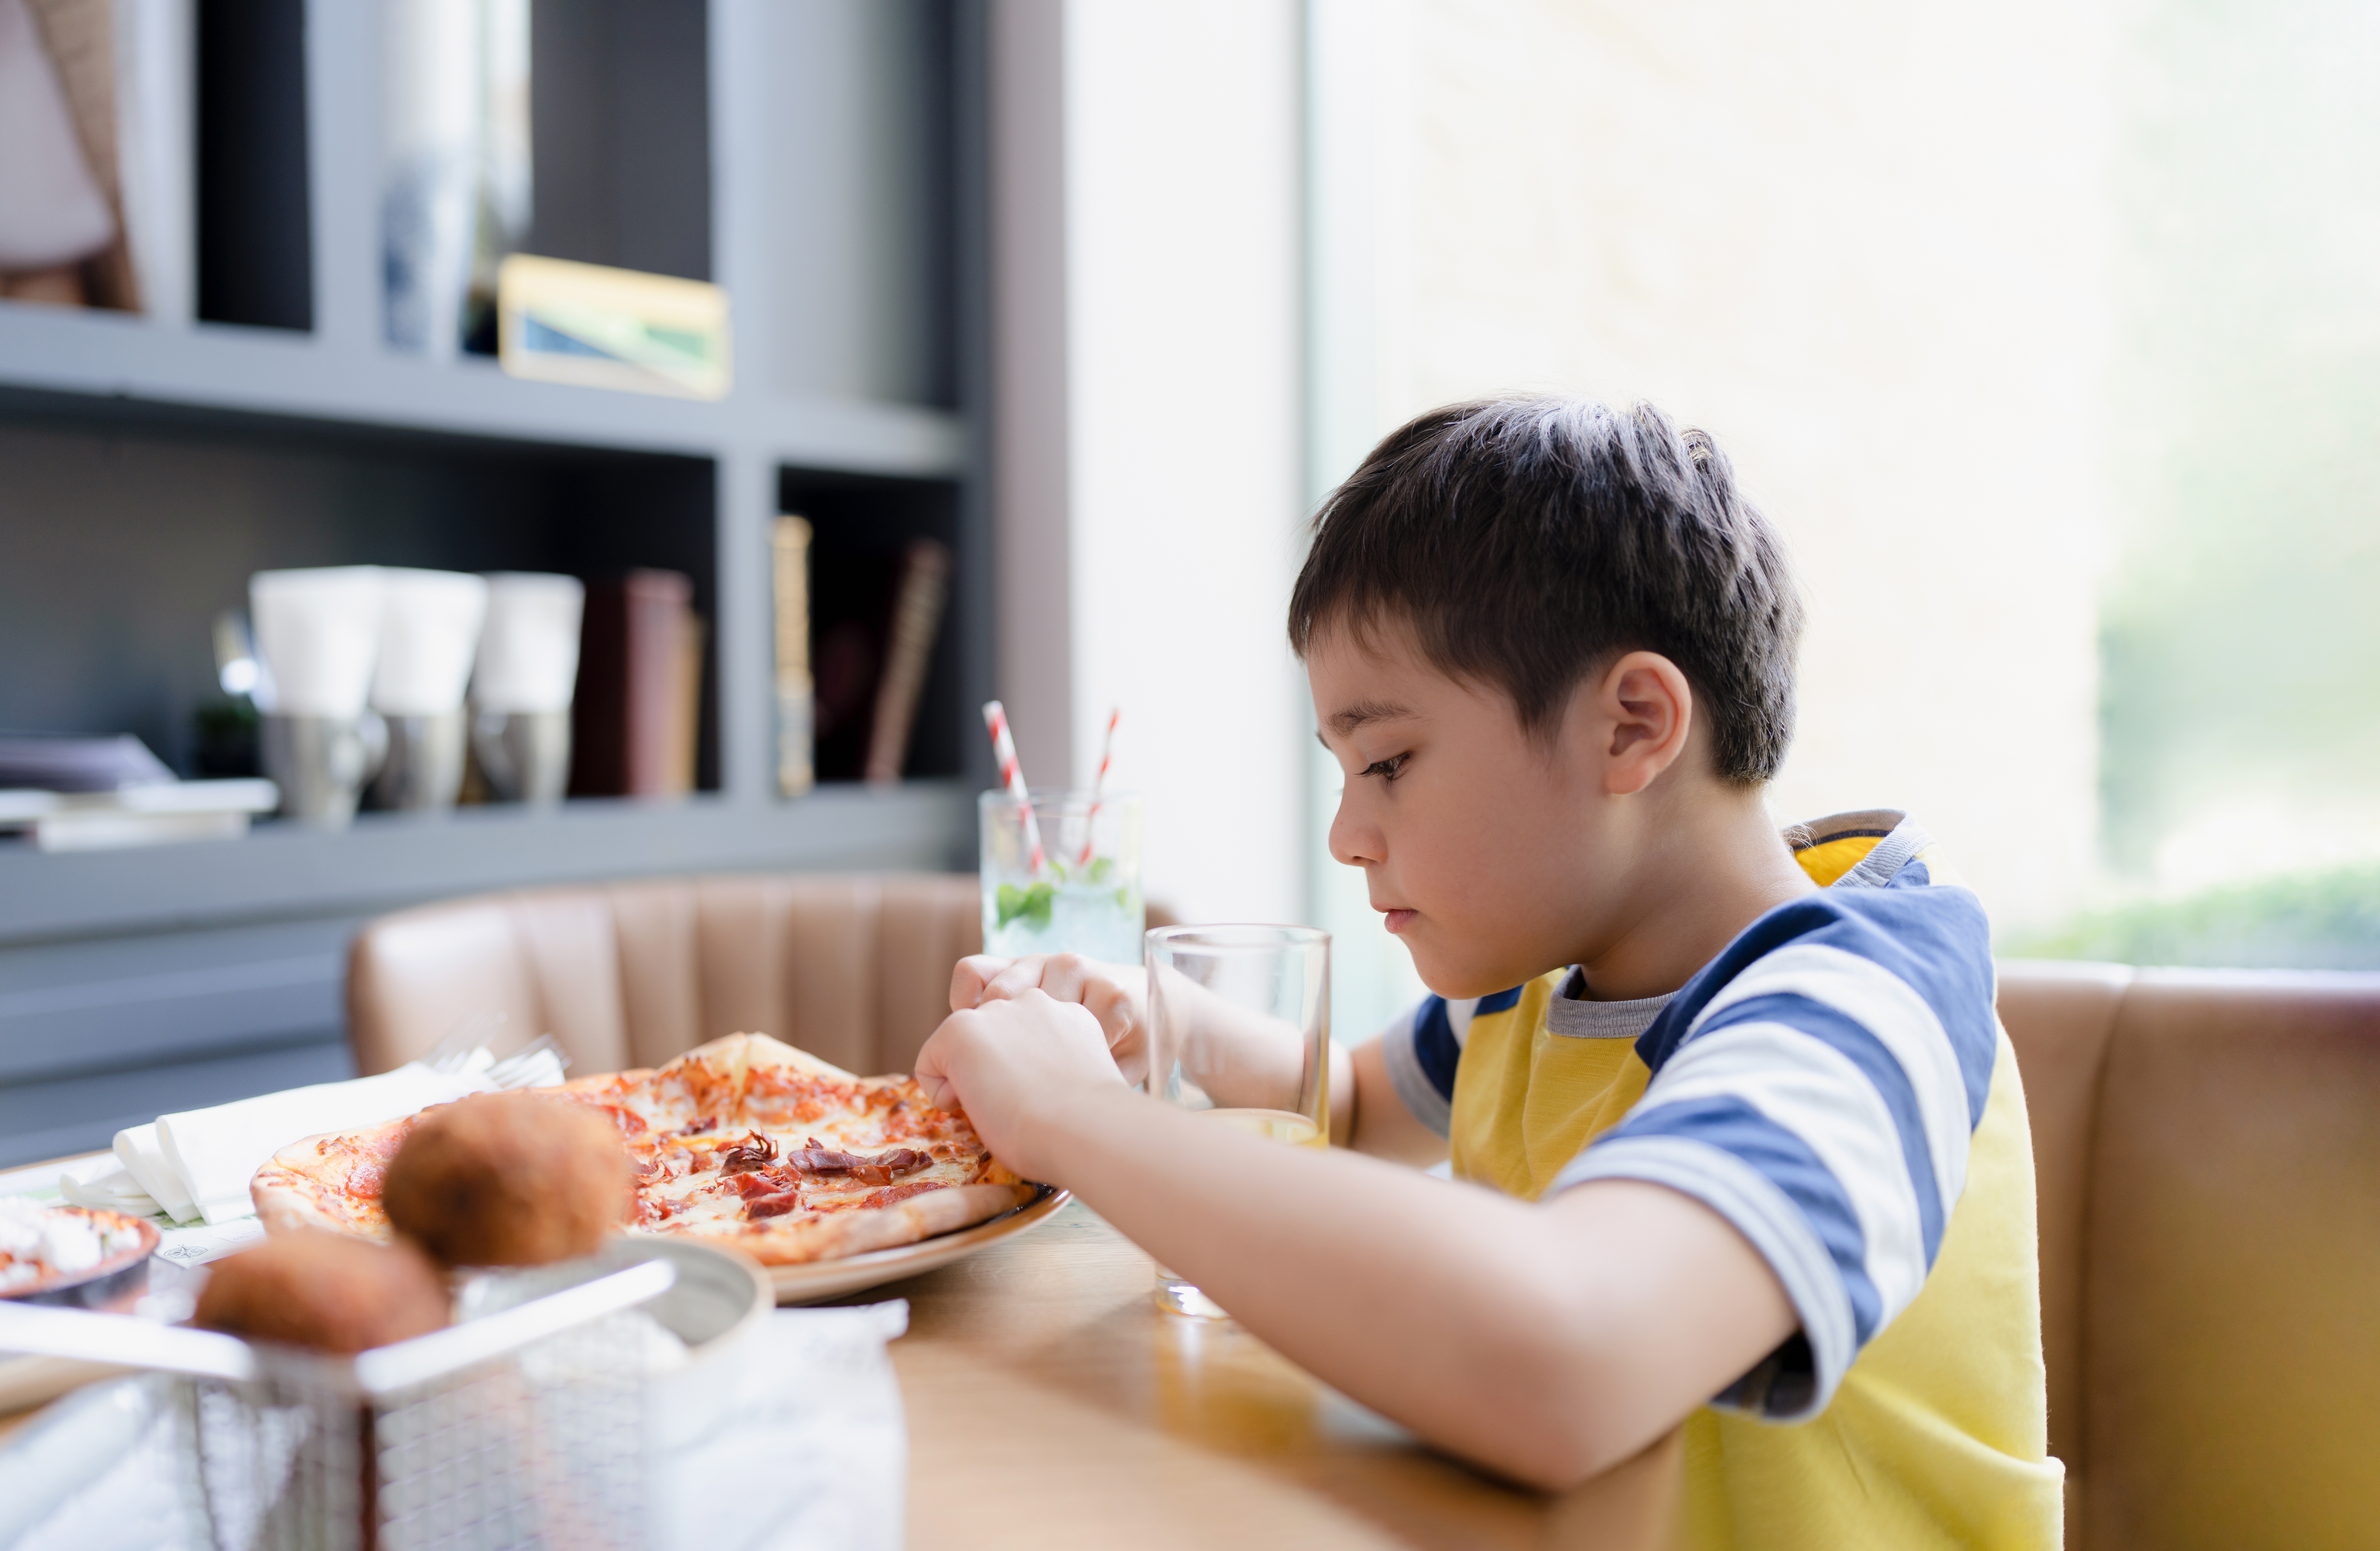 Ein Junge beim Essen | Quelle: Shutterstock